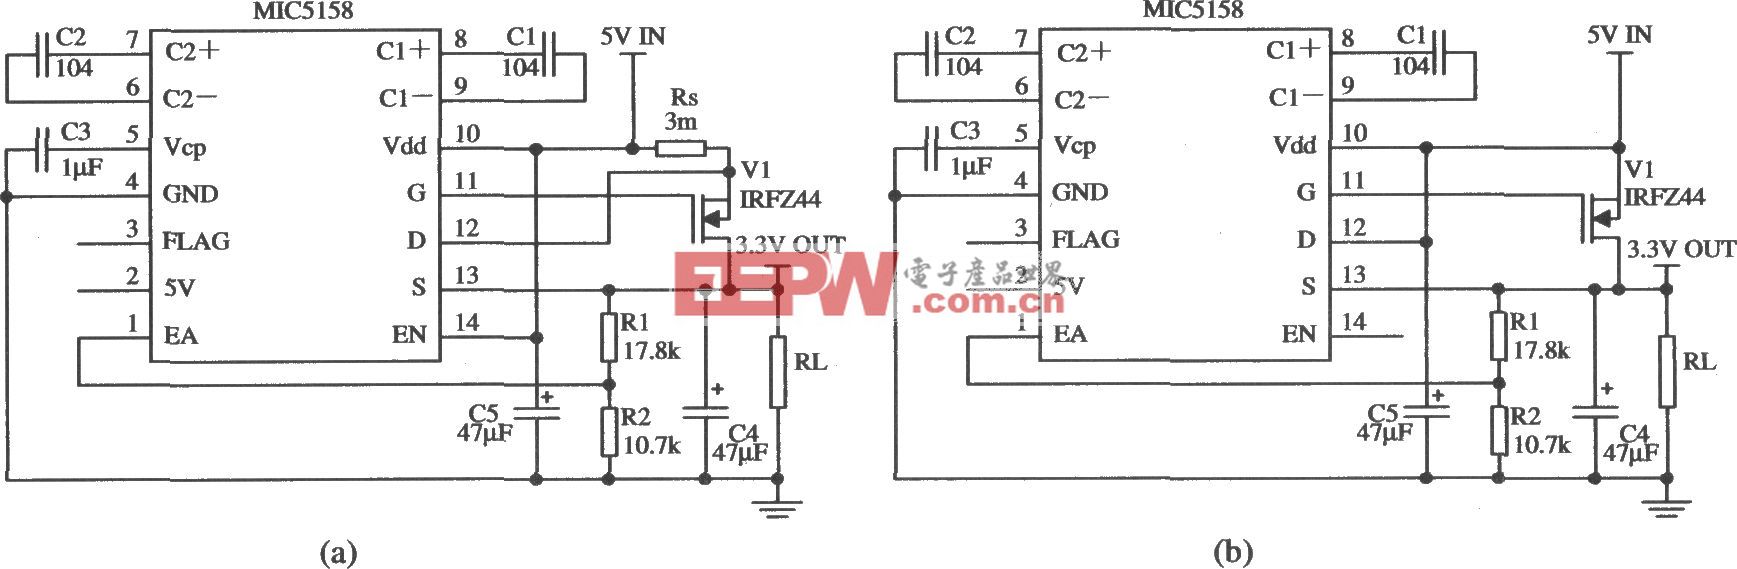 由MIC5158構成的外圍電路簡單的5V輸入、3.3V／10A輸出的線性穩壓器電路